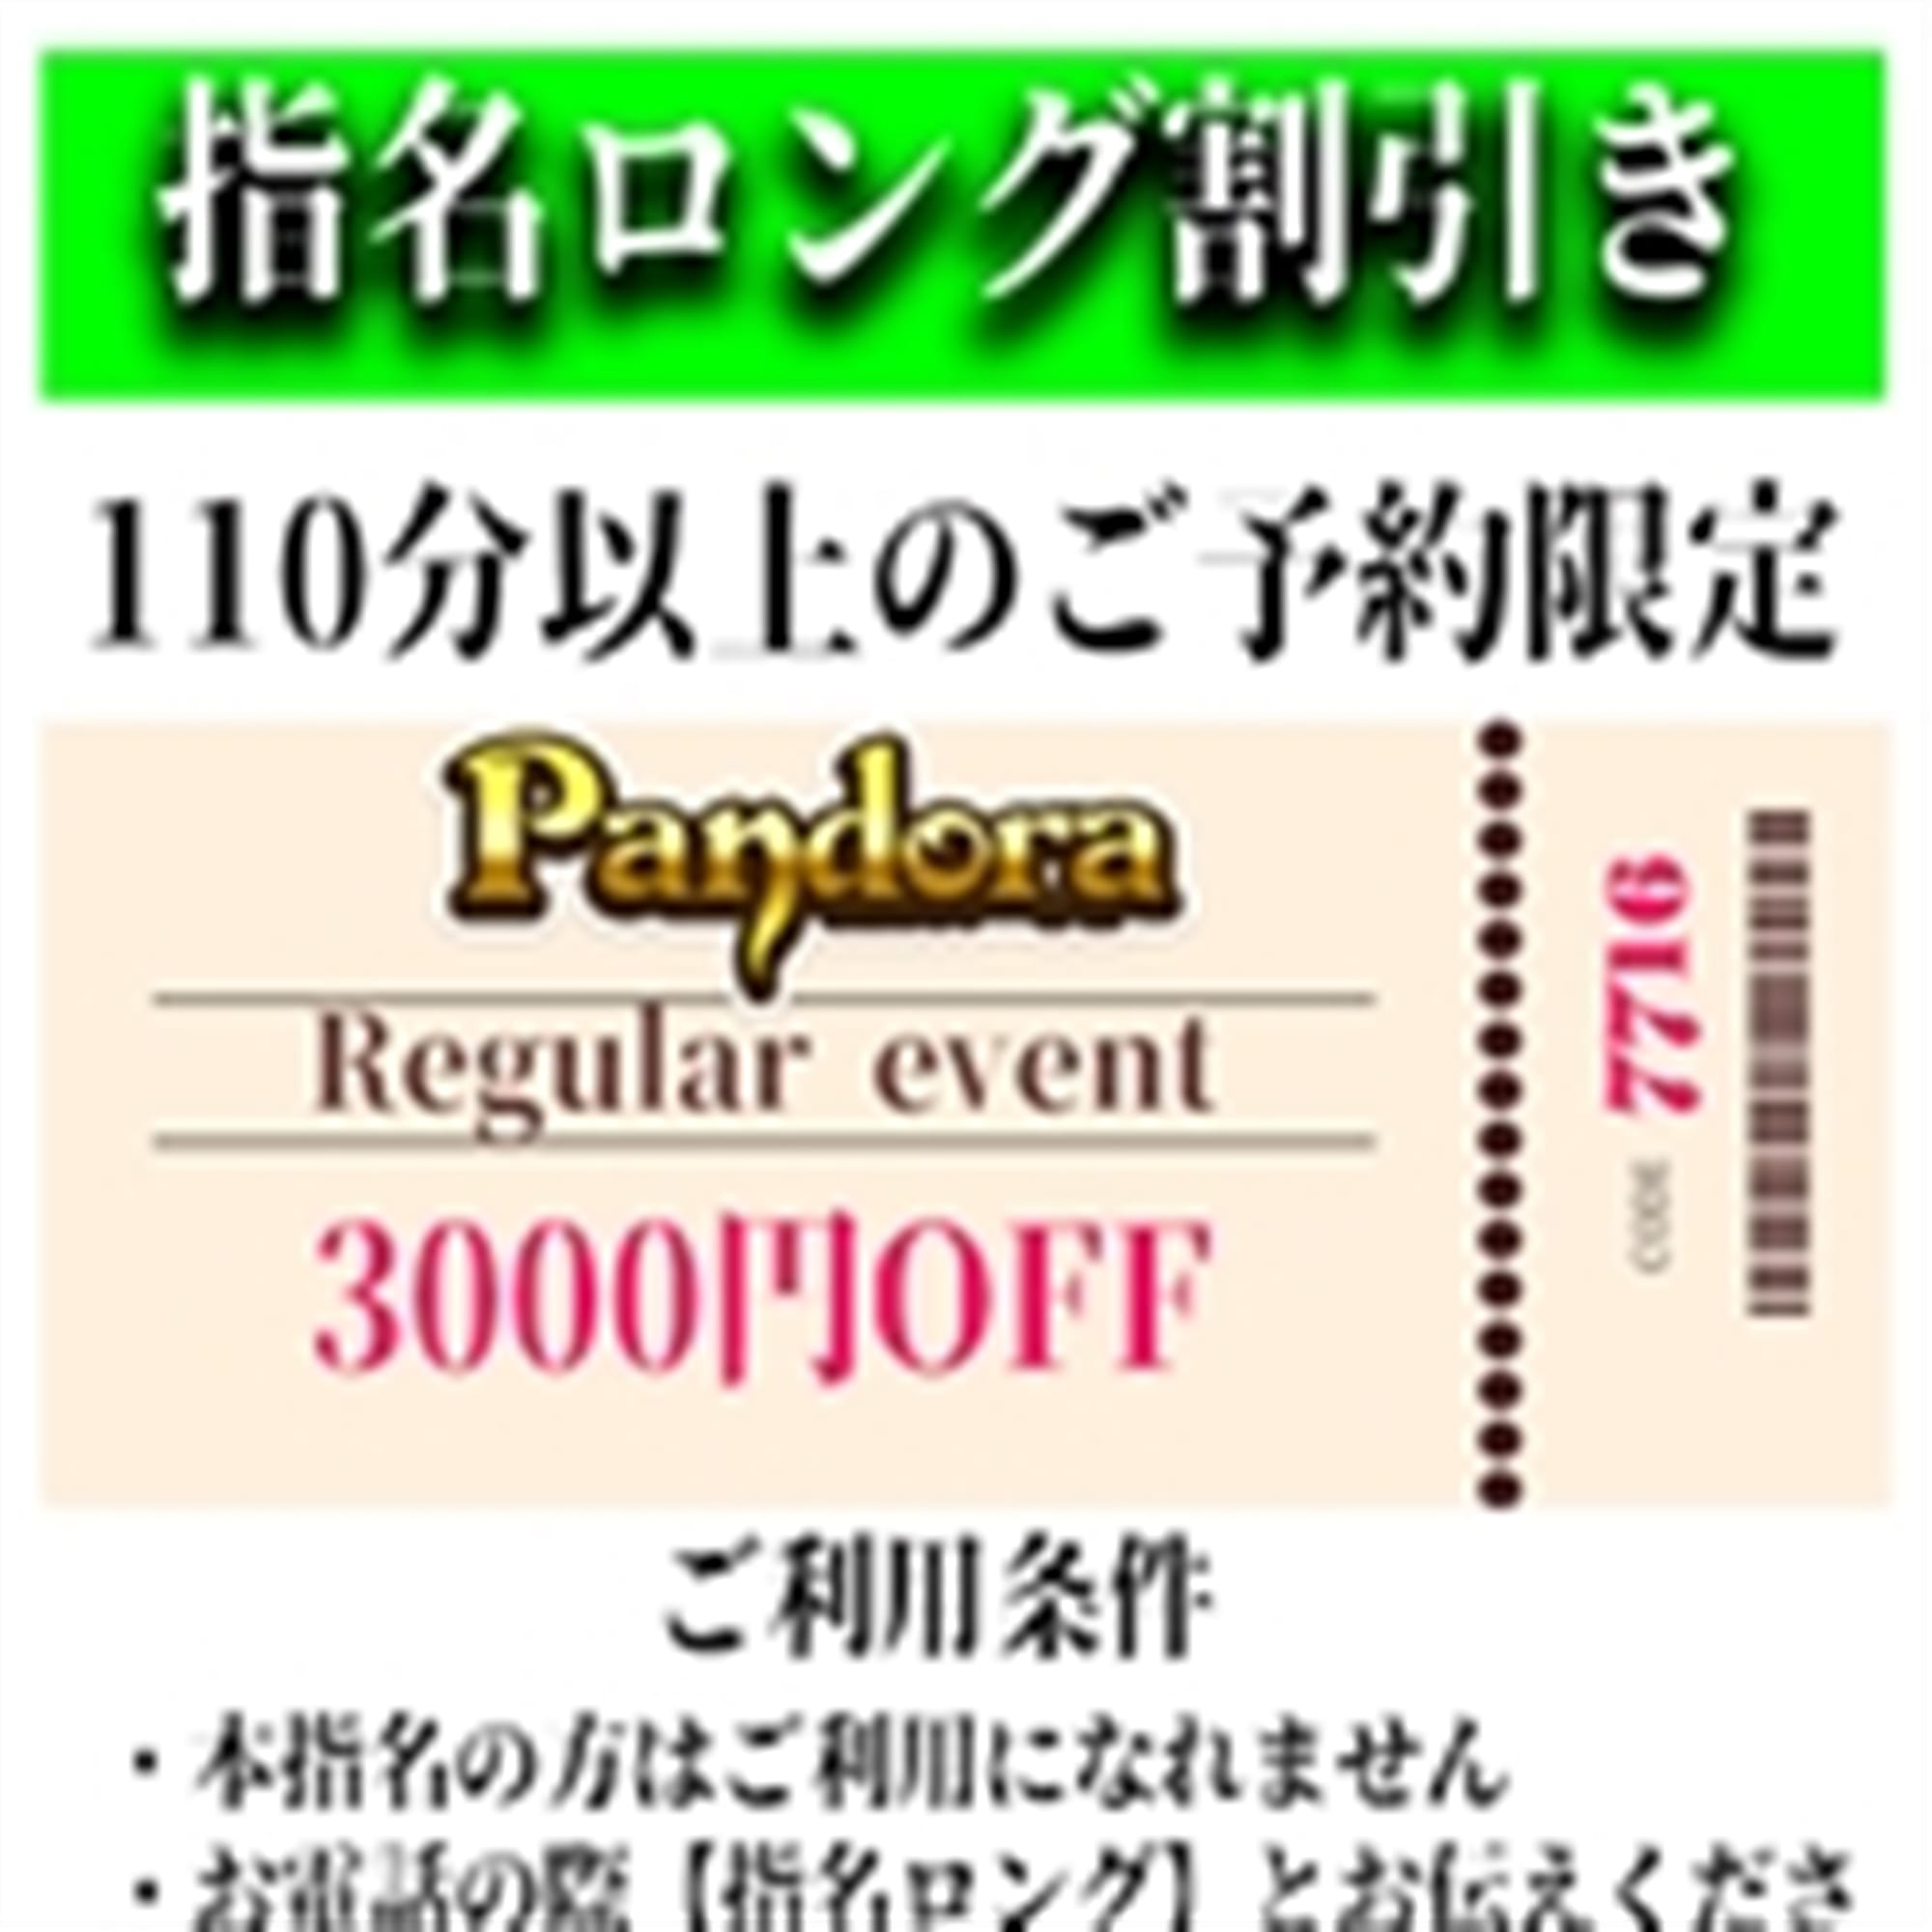 「ご指名のお客様も遊べるロングコース割引」03/29(金) 18:42 | Pandora(パンドラ)新潟のお得なニュース